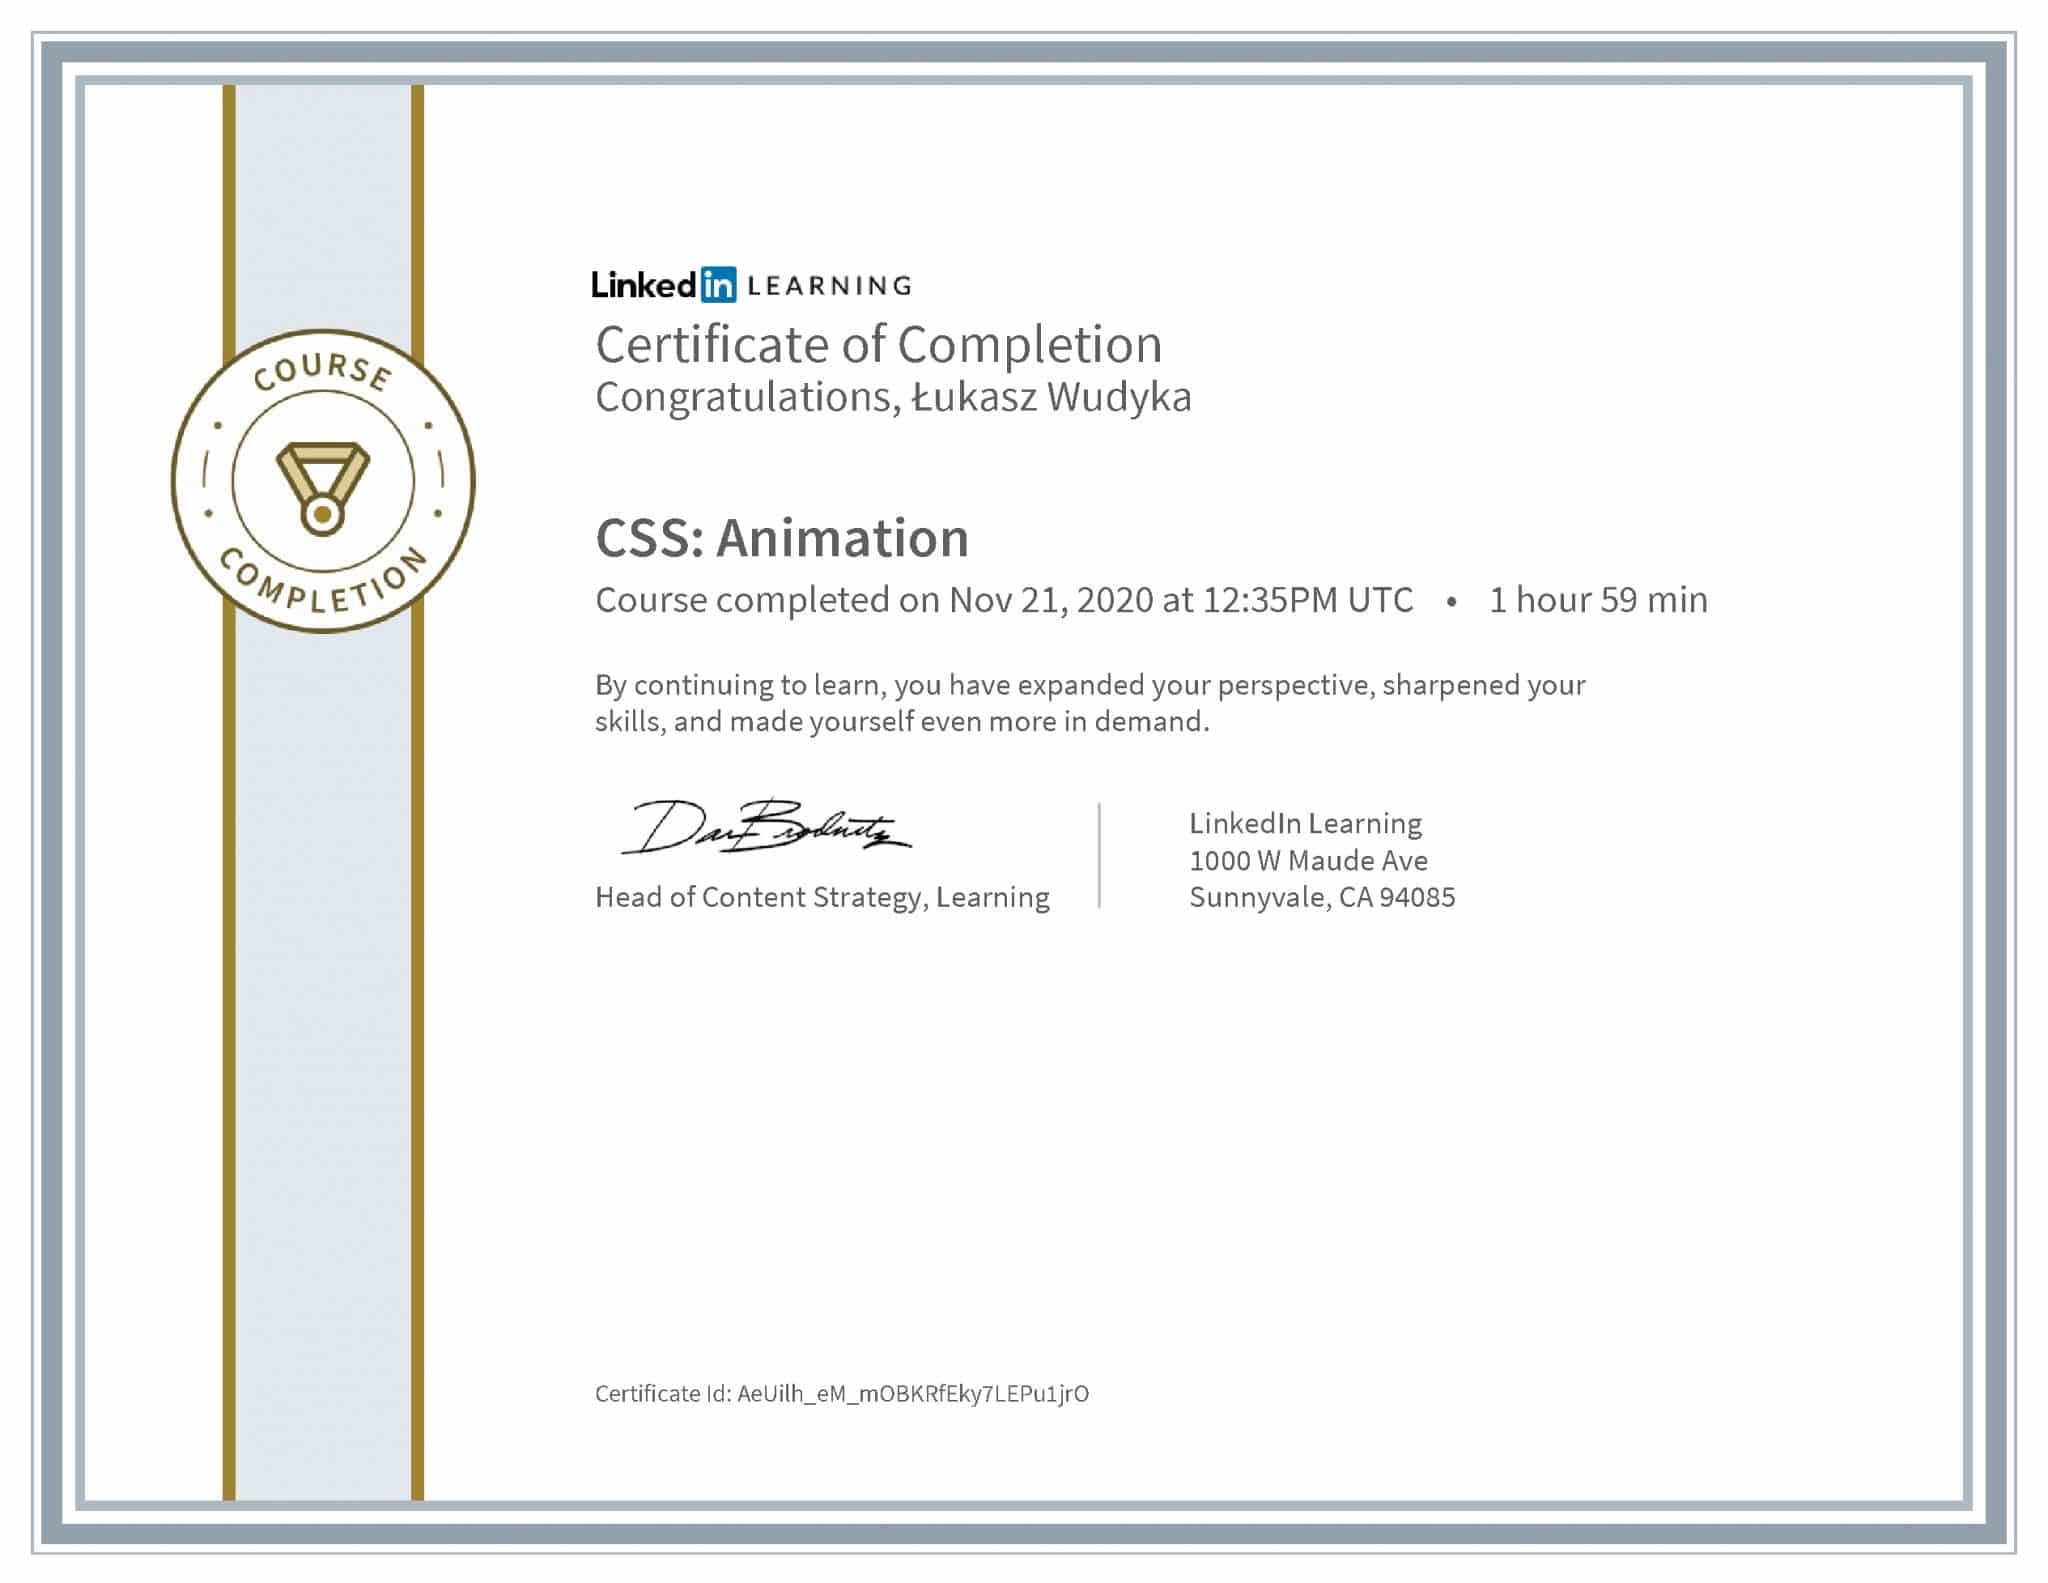 Łukasz Wudyka certyfikat LinkedIn CSS: Animation